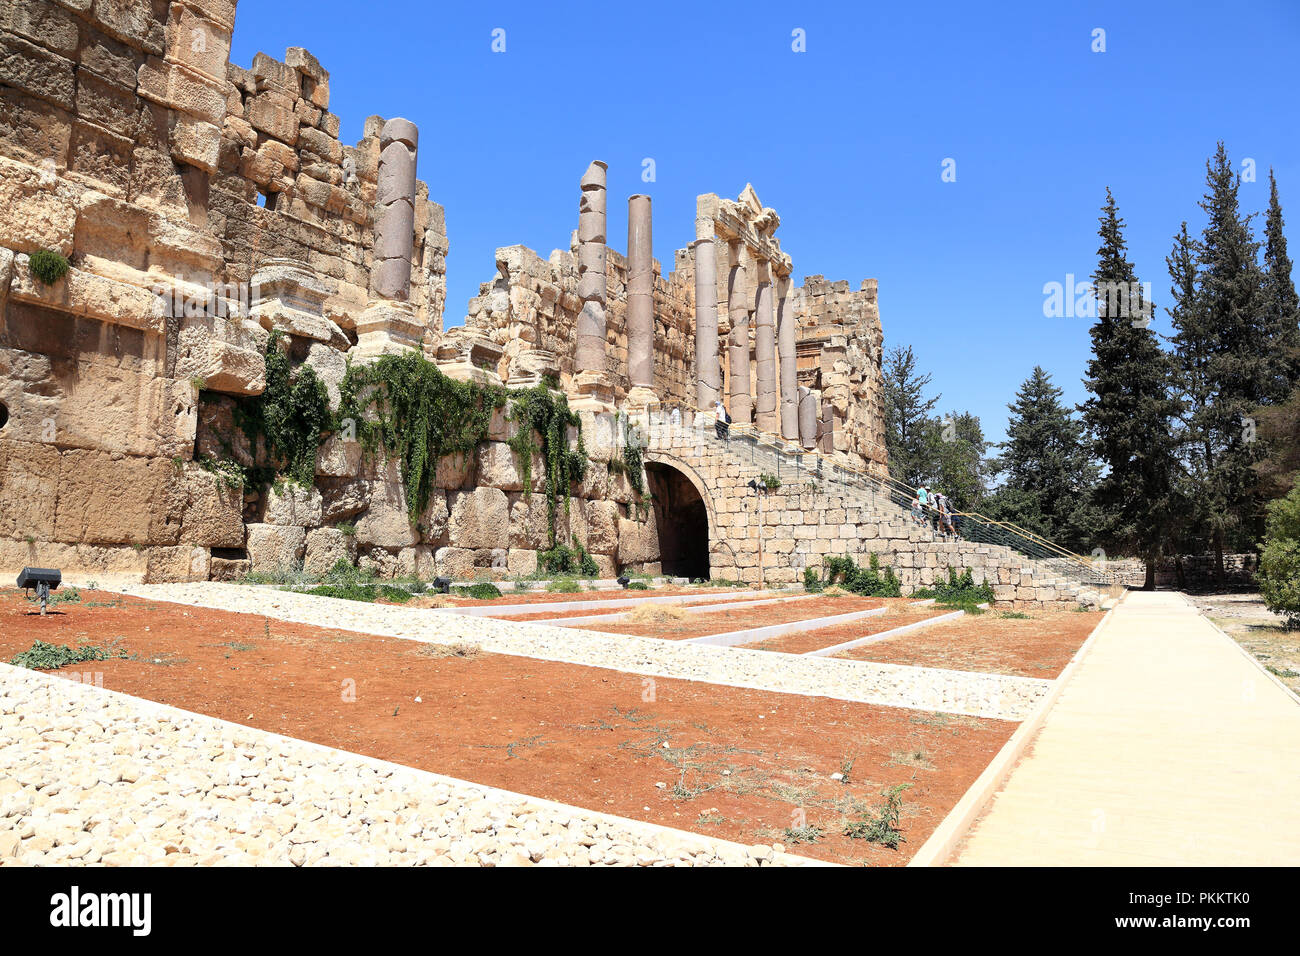 Entrée de Baalbek, vestiges romains, Liban Banque D'Images